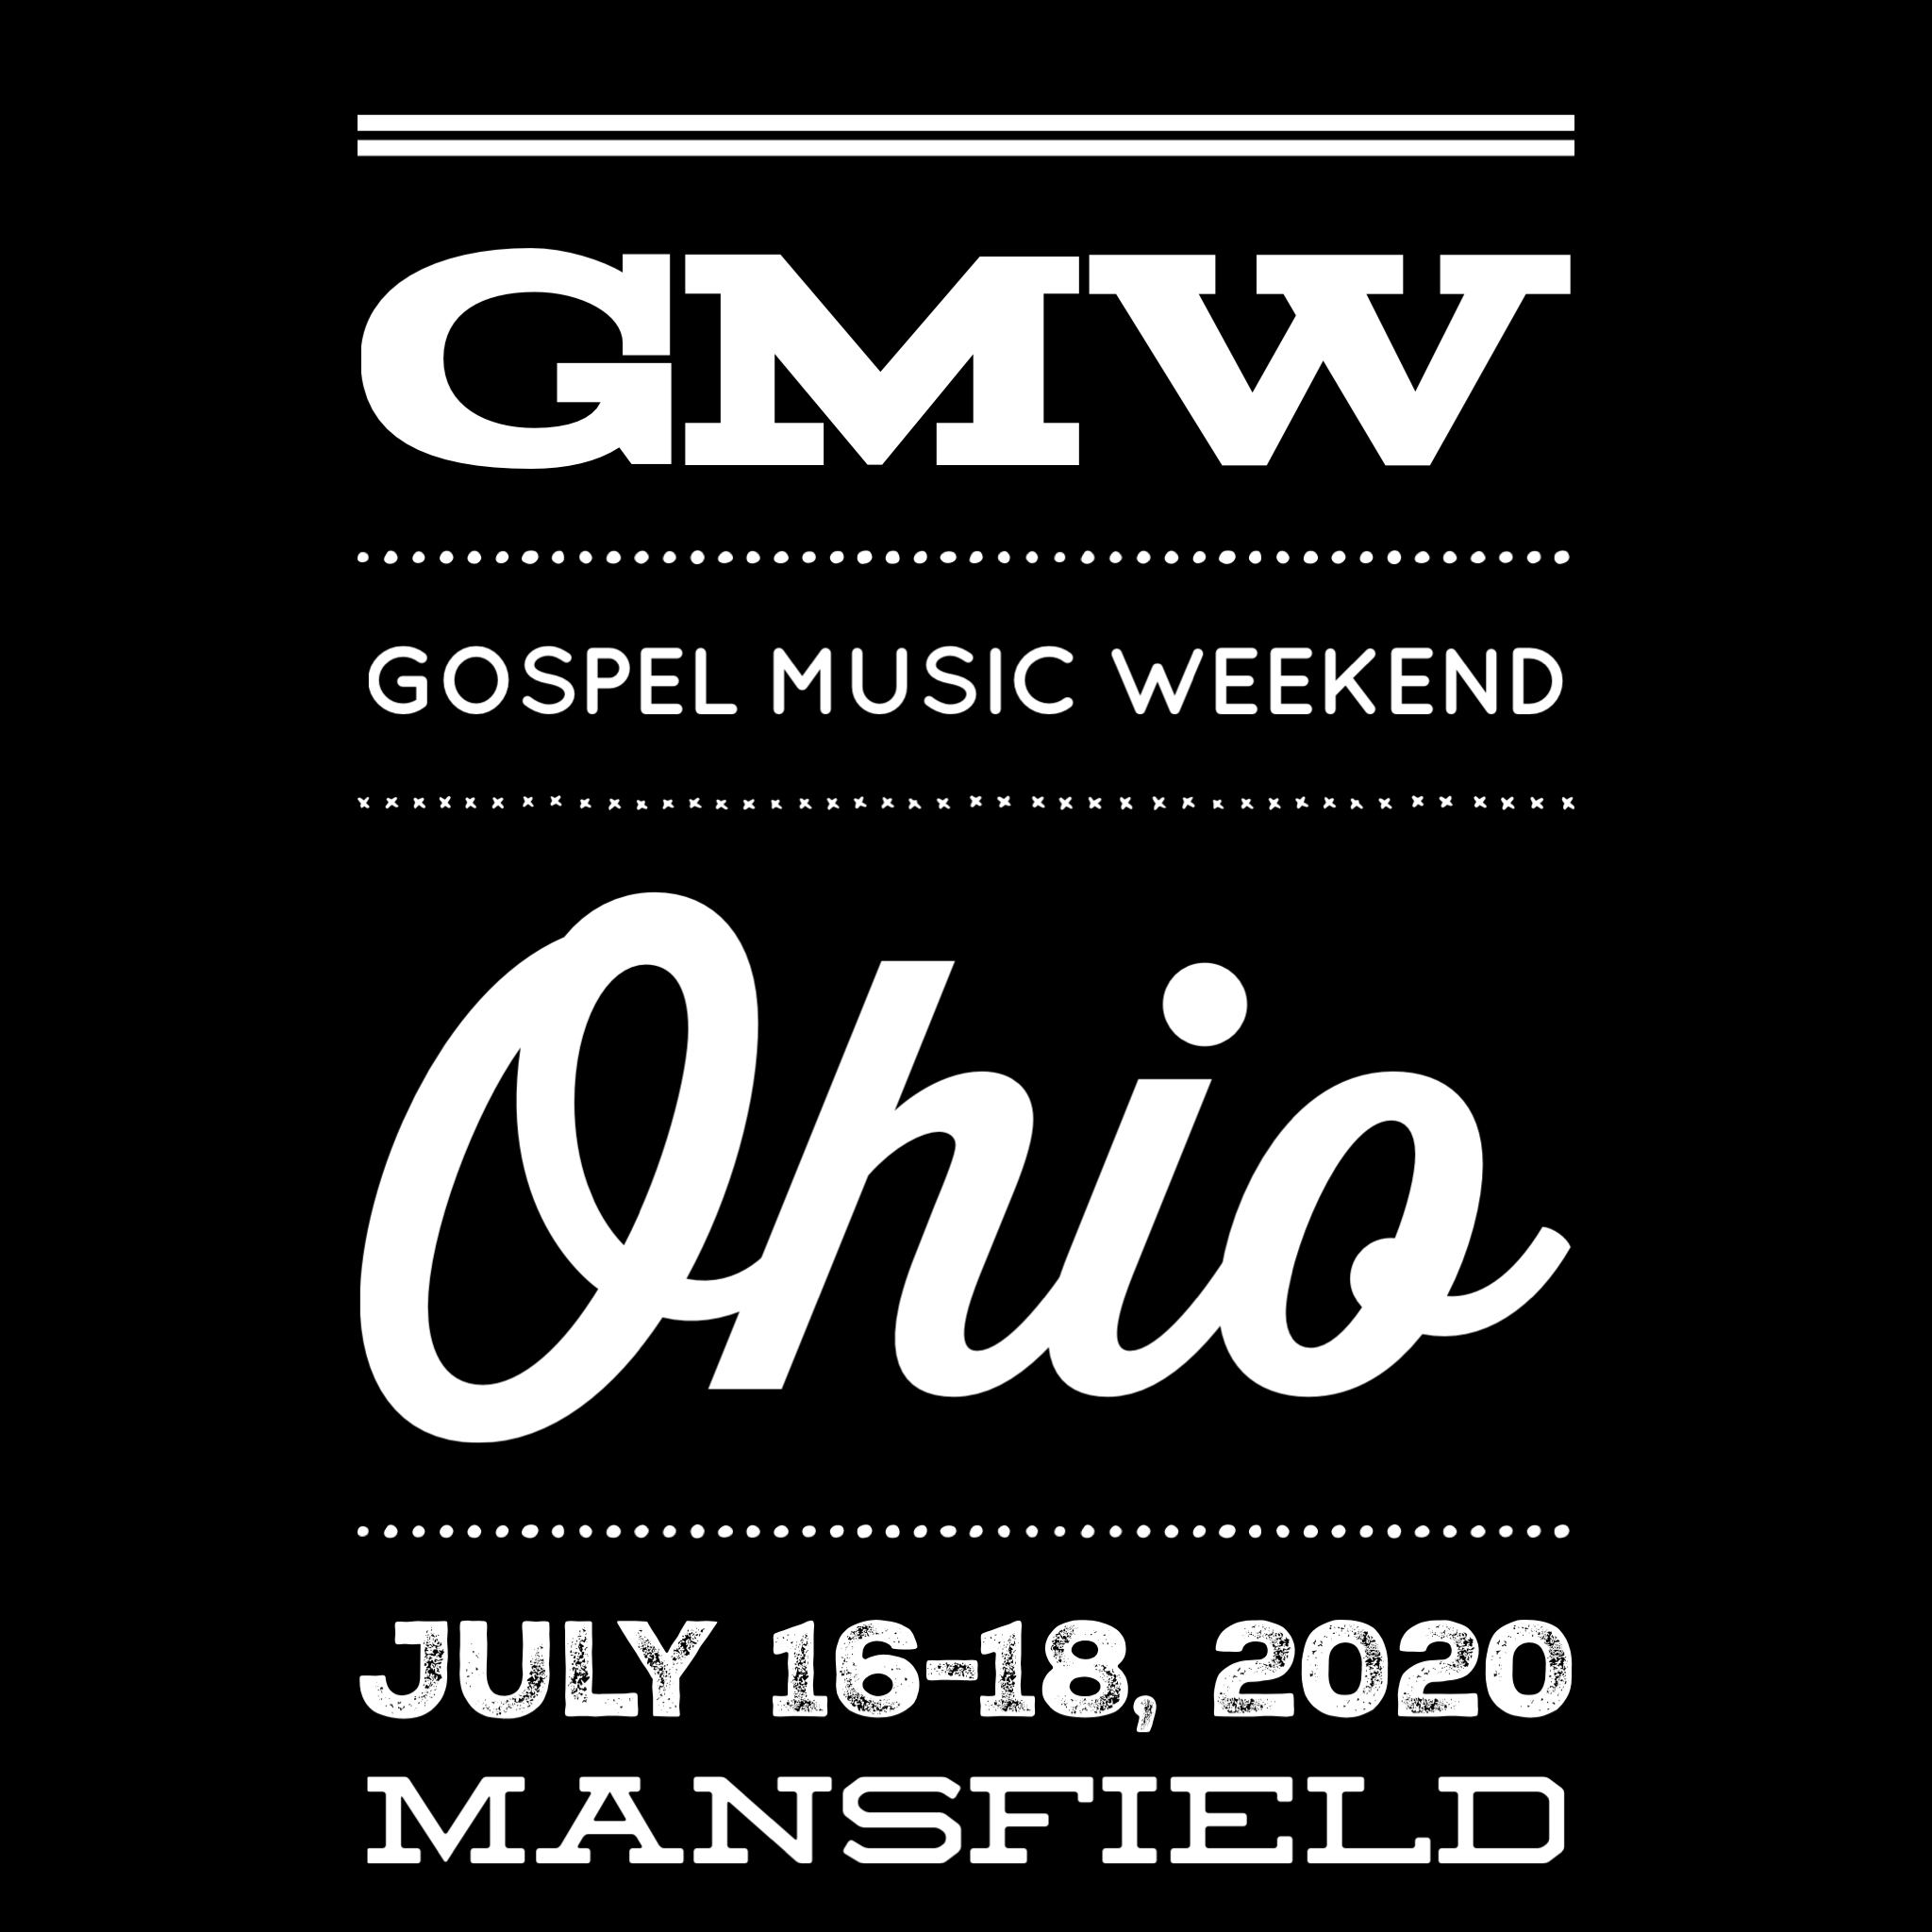 Gospel Music Weekend Slated for Ohio